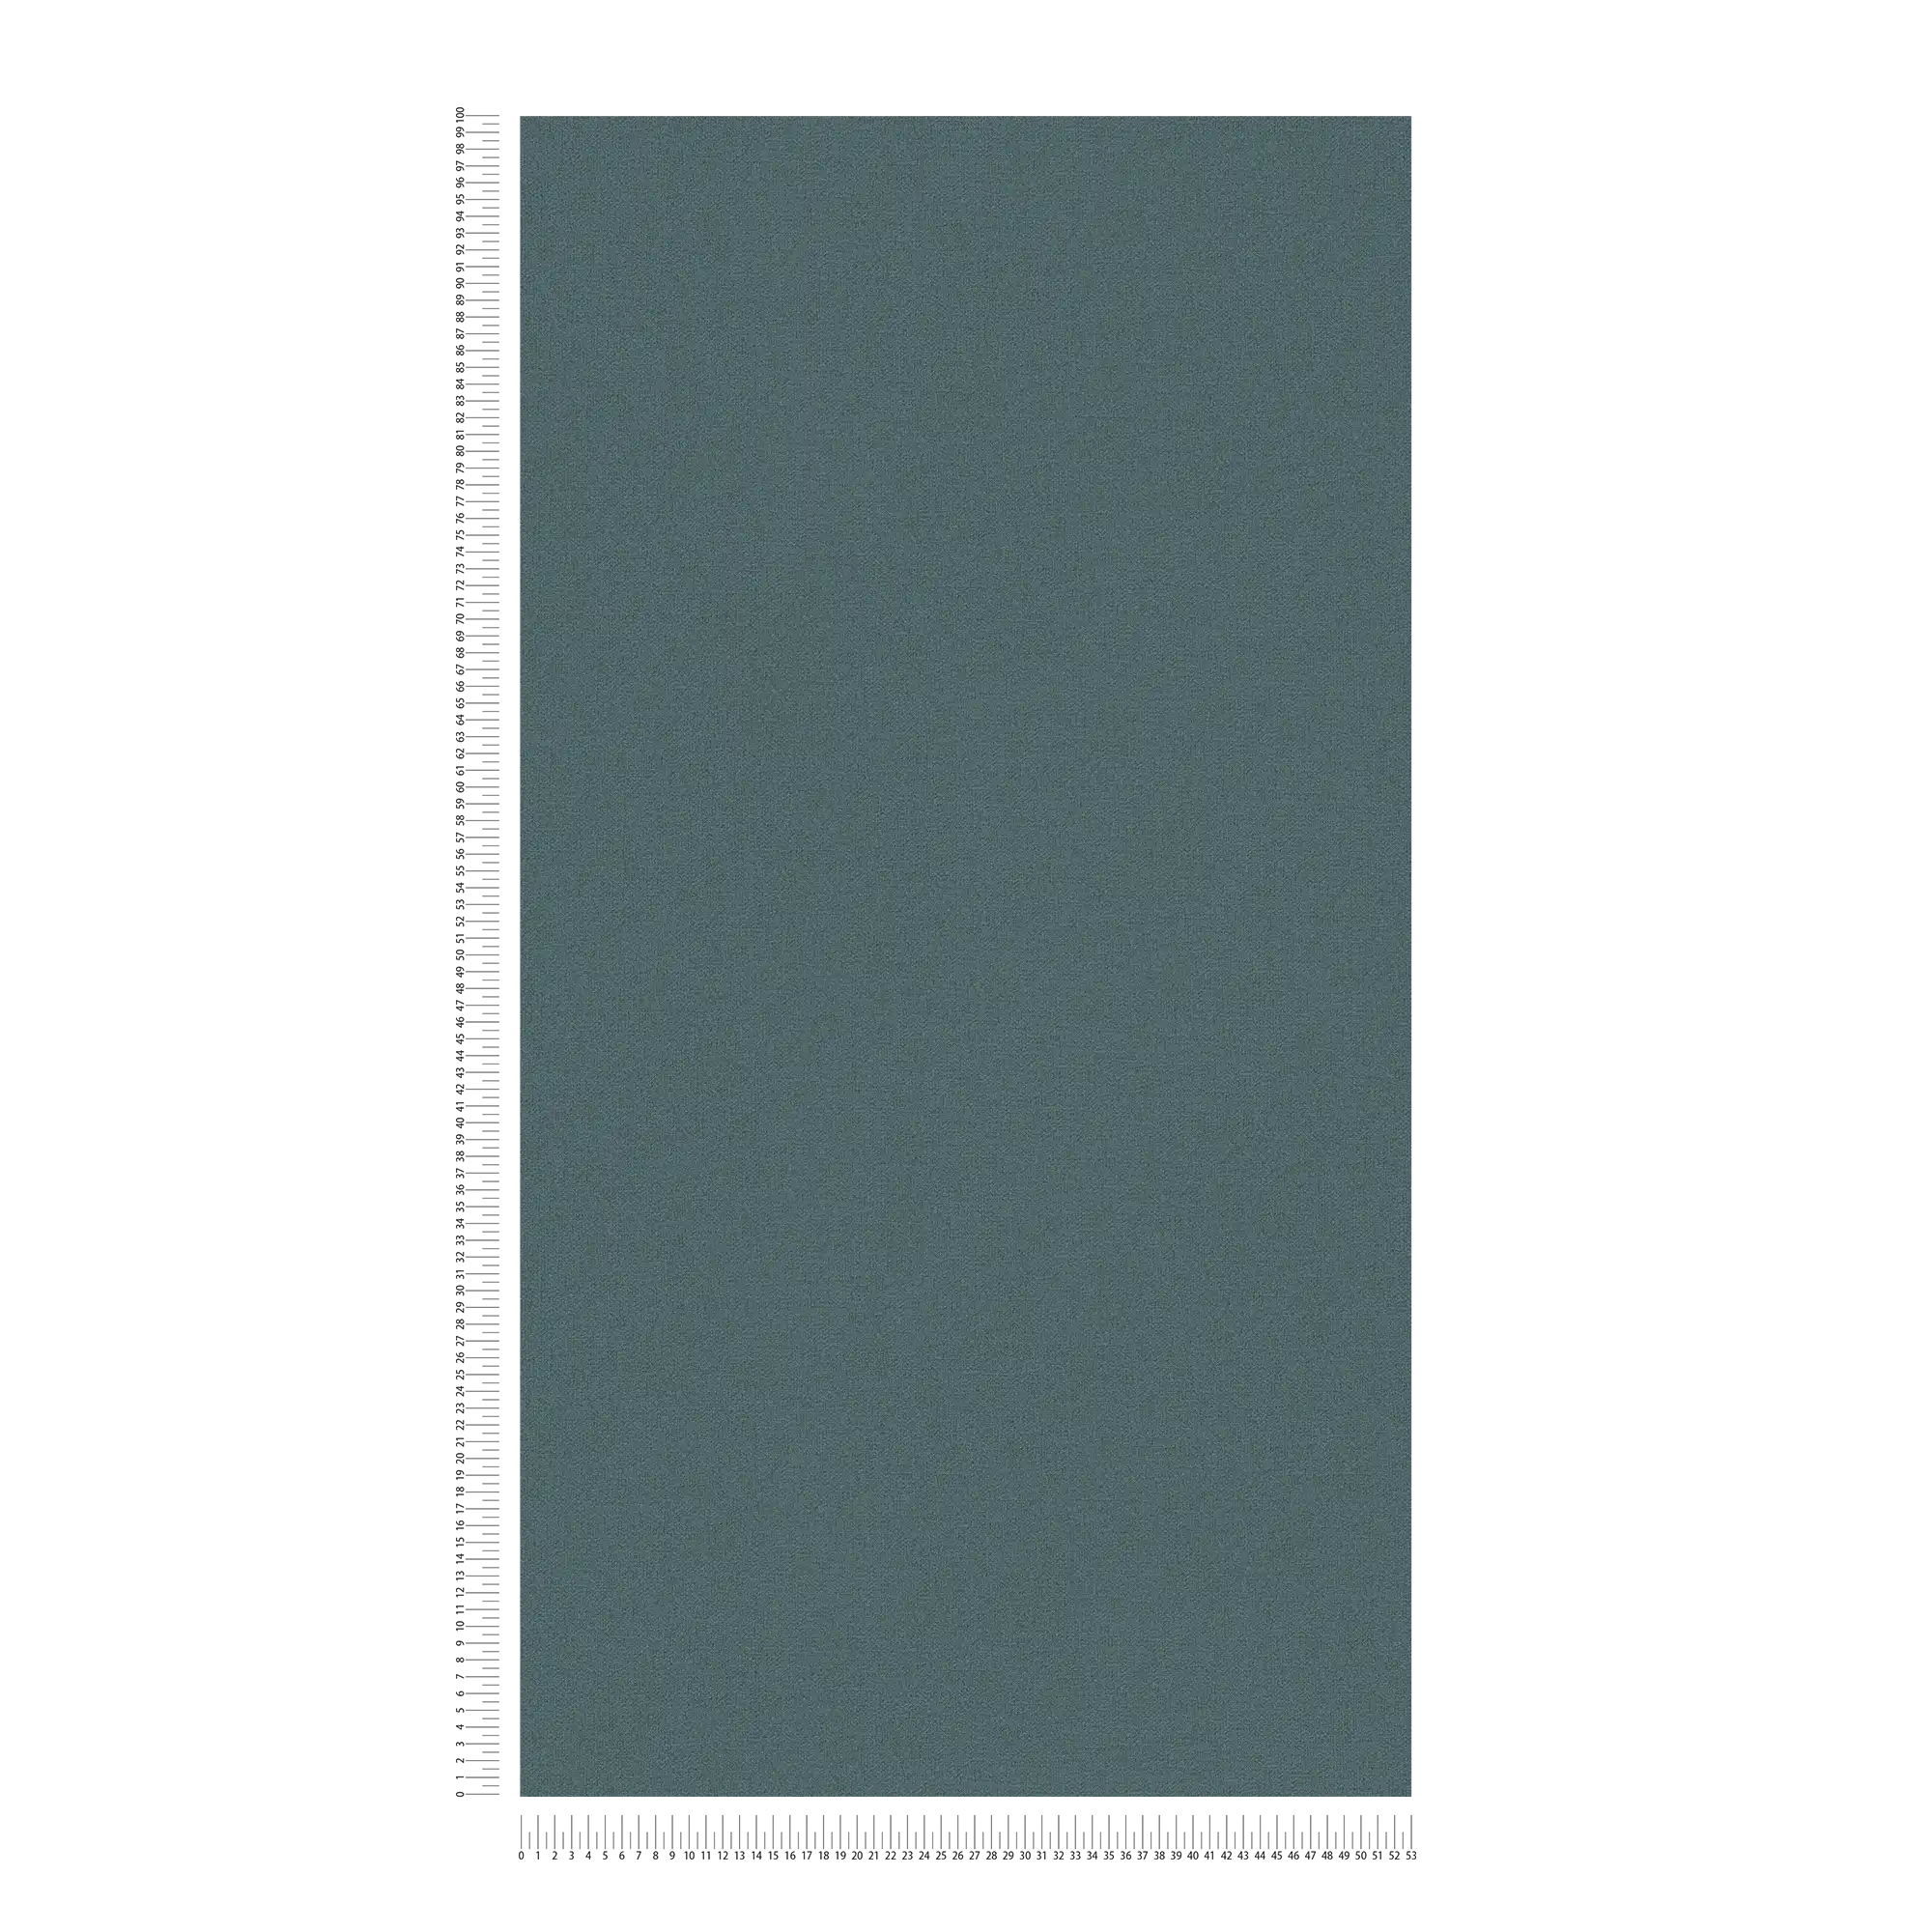             Effen vliesbehang met linnenlook PVC-vrij - Blauw, Grijs
        